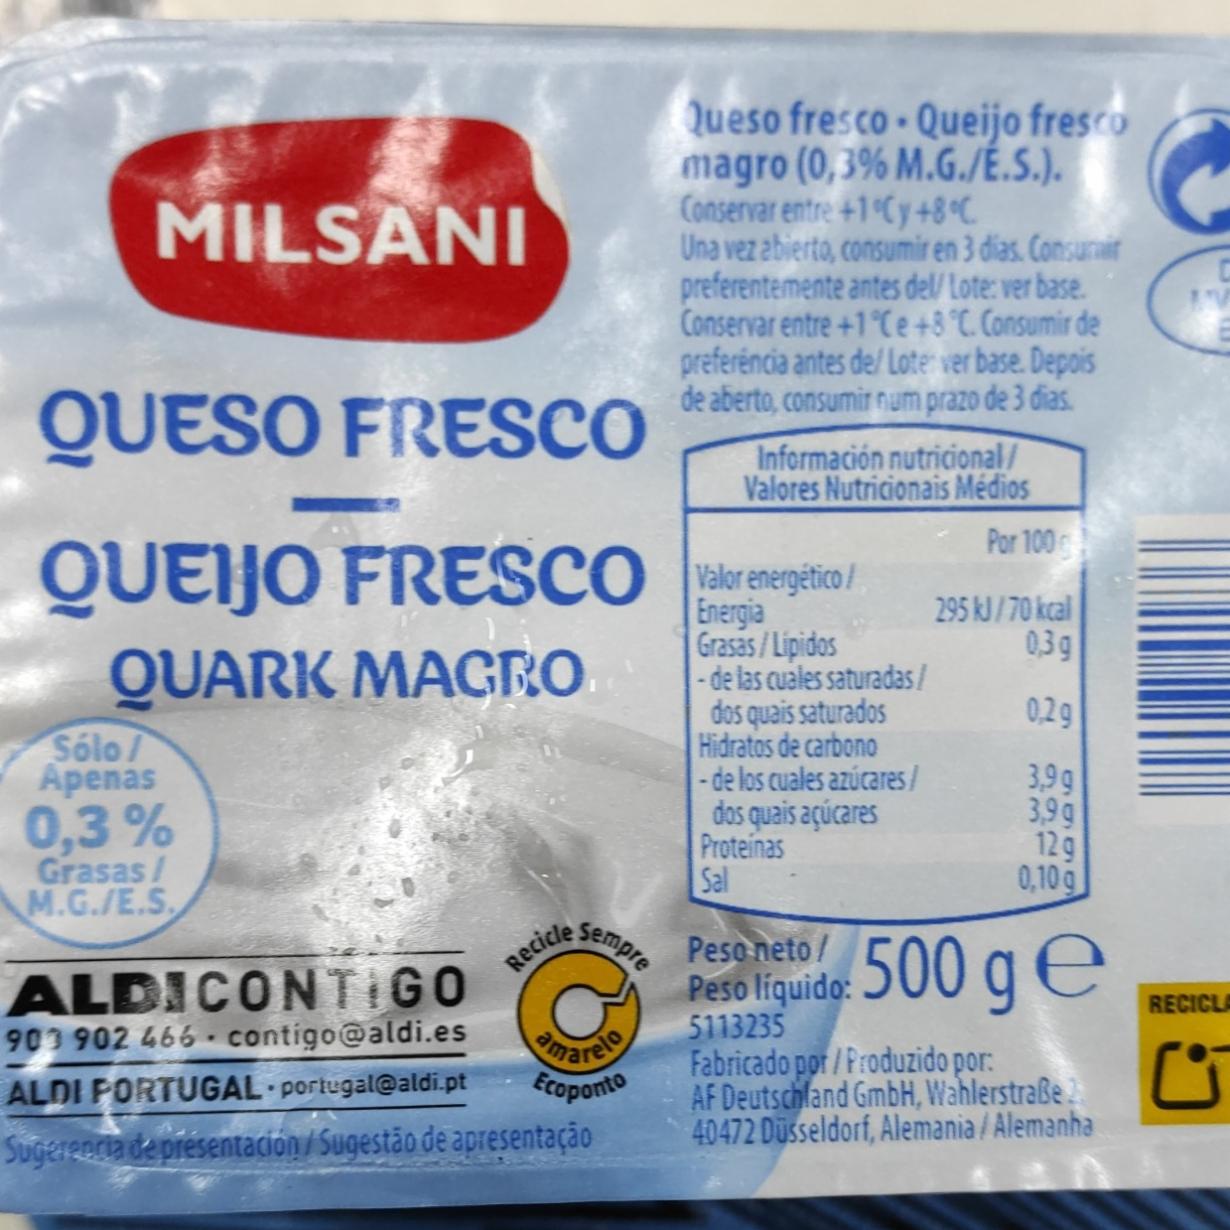 Fotografie - queso fresco Milsani